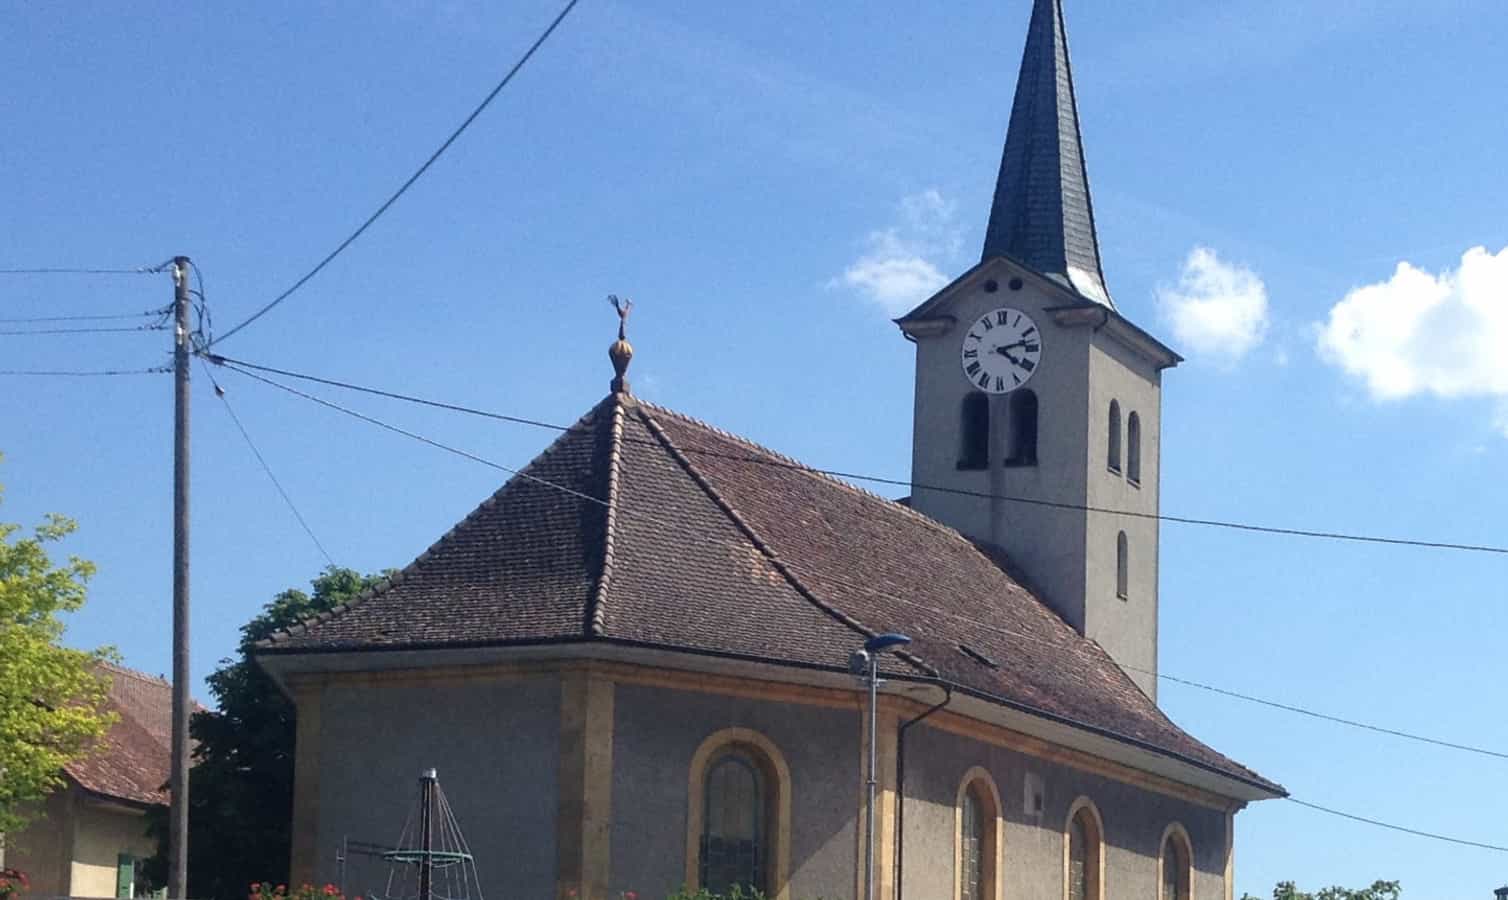 L'église de Suchy, dans le canton de Vaud en Suisse.